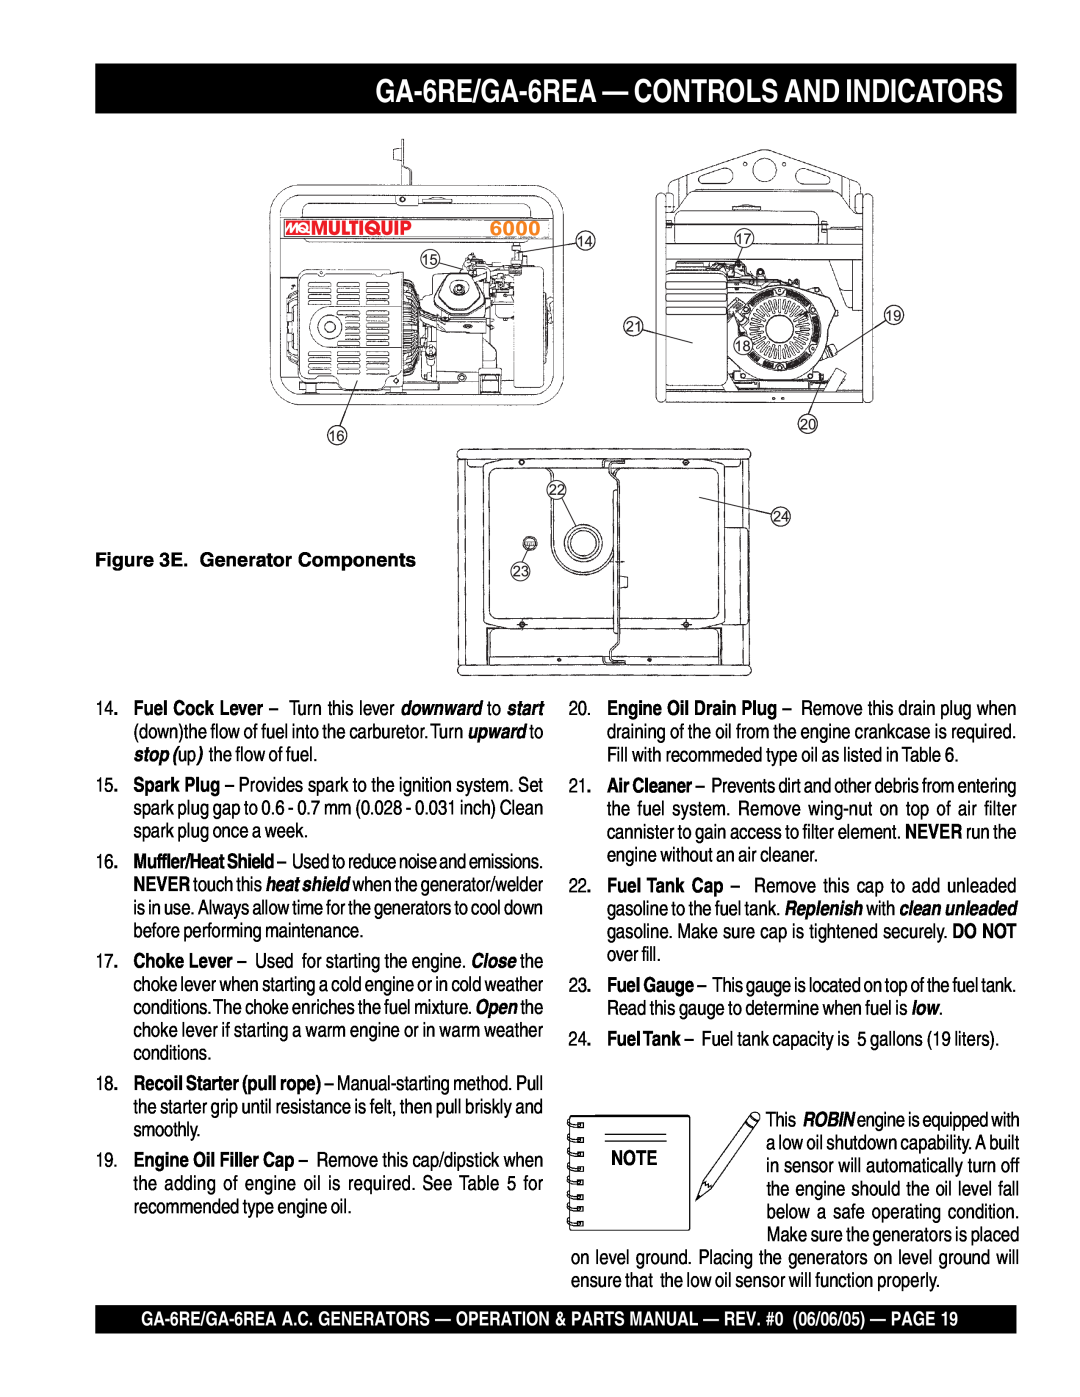 Multiquip manual GA-6RE/GA-6REA- CONTROLS AND INDICATORS, E. Generator Components 